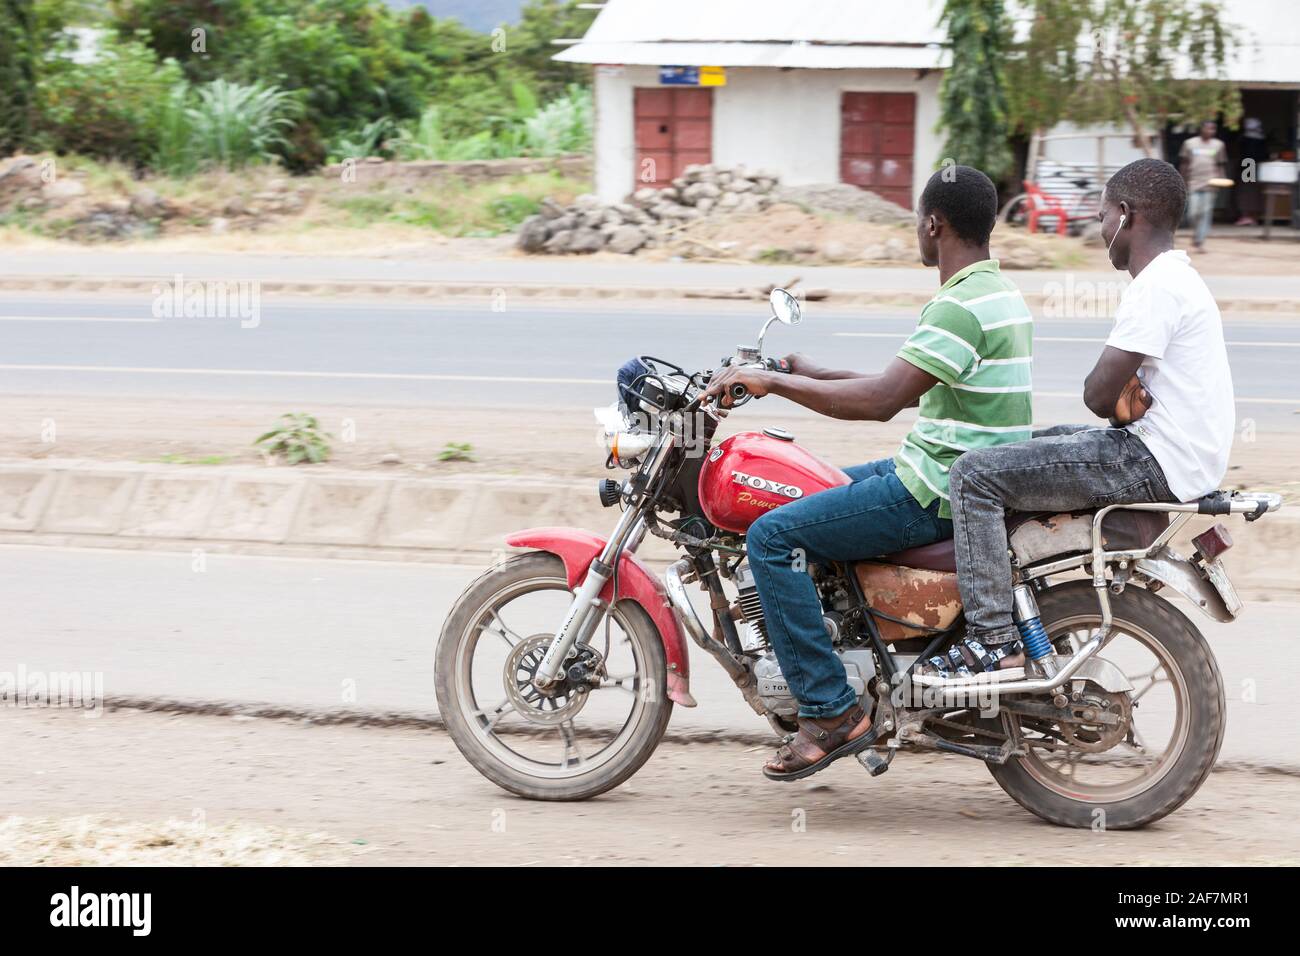 Tanzania, Mto Wa Mbu Street scene, giovani uomini in moto, in Abbigliamento Casual. Foto Stock